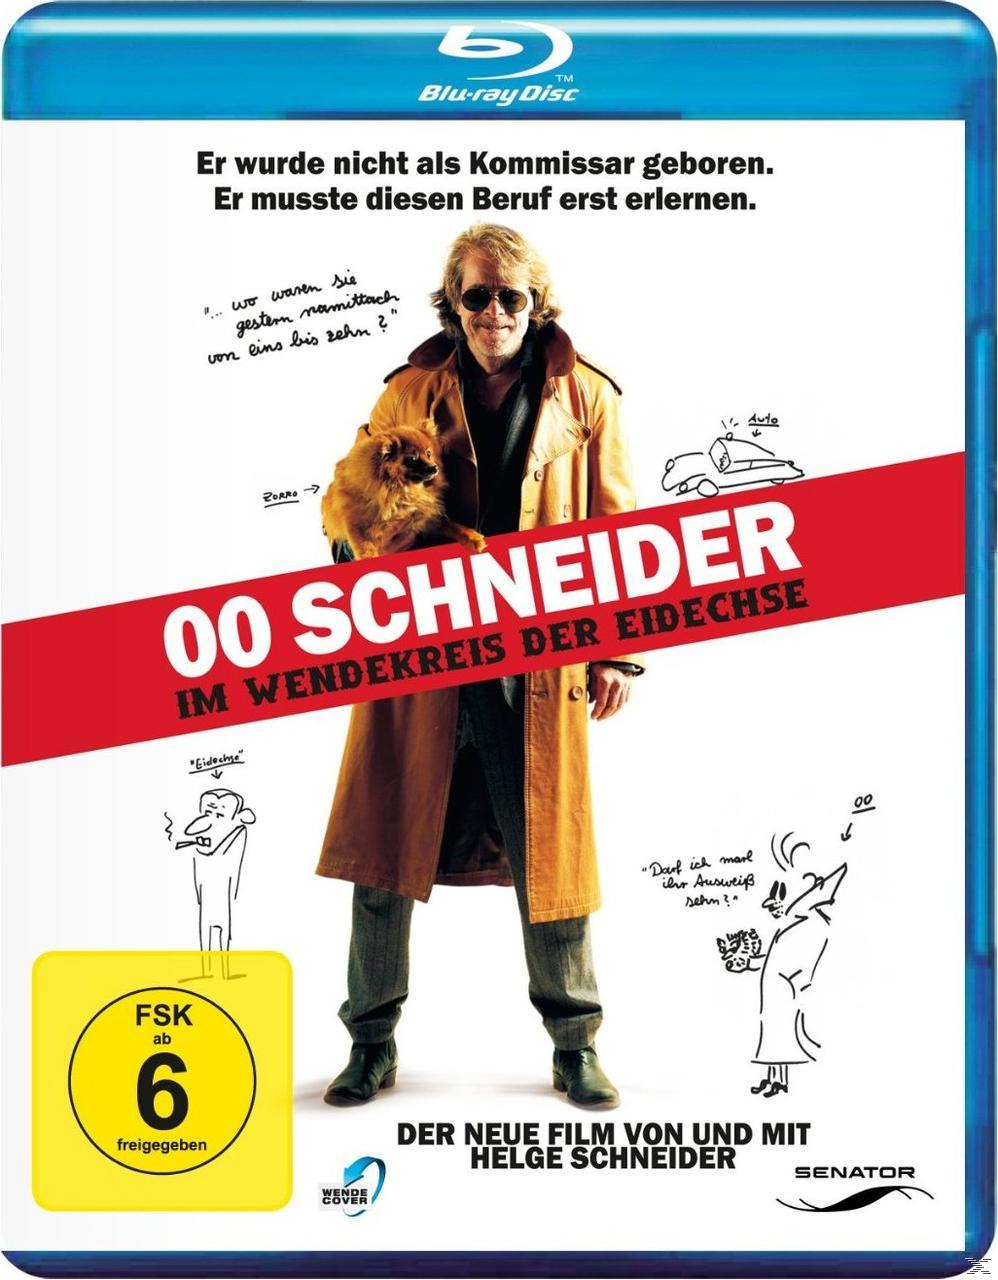 Wendekreis Blu-ray im der Eidechse - Schneider